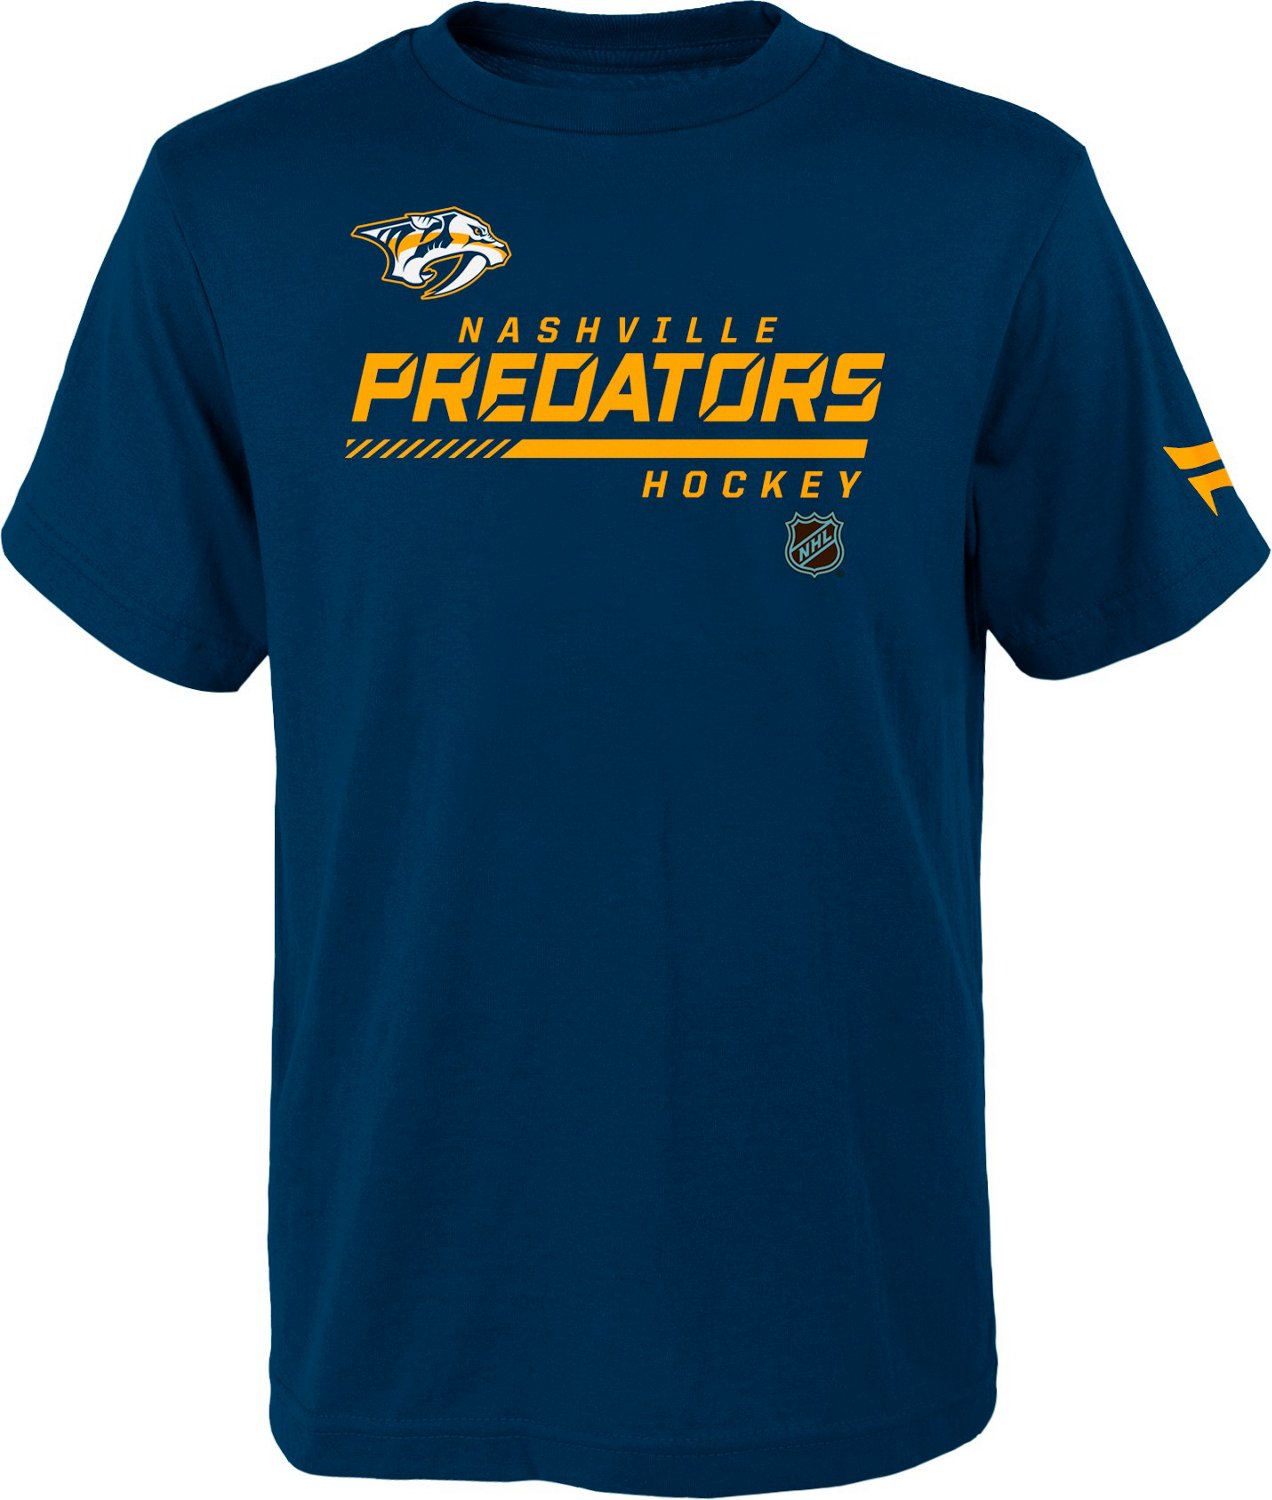 Outerstuff Boys' Nashville Predators Authentic Pro Short Sleeve T-shirt ...